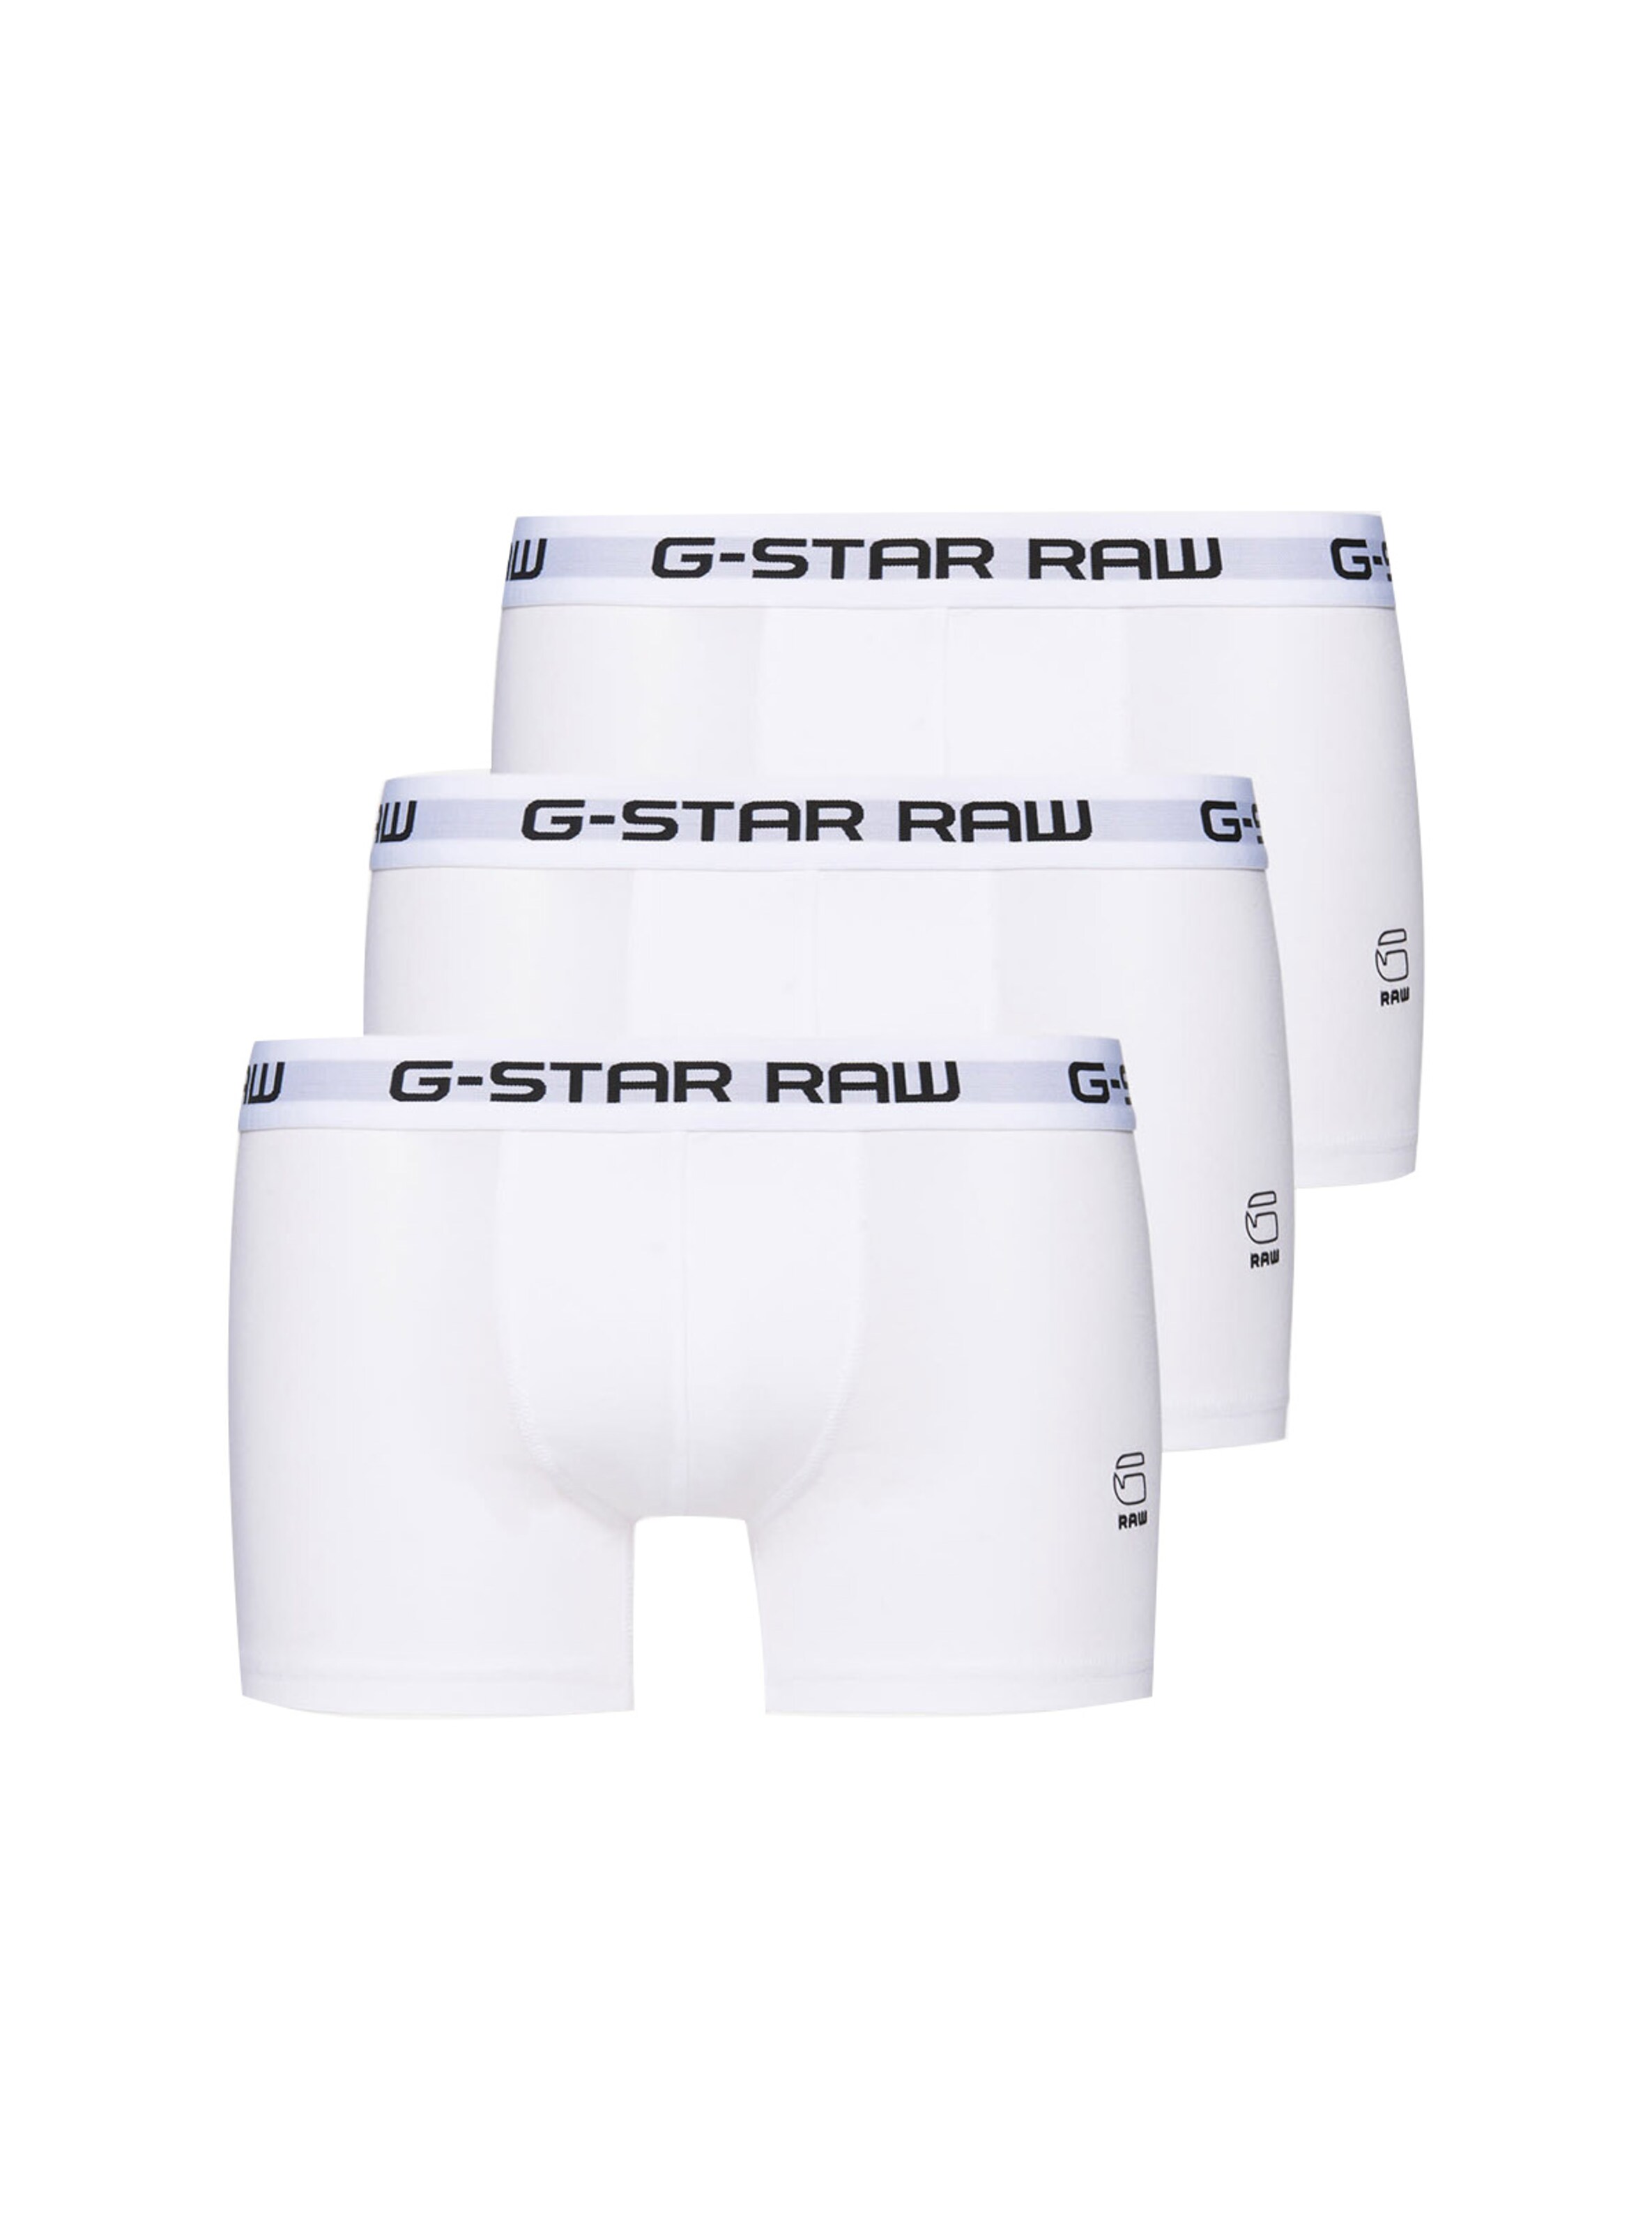 Männer Wäsche G-Star RAW Boxershorts in Weiß - BZ41104